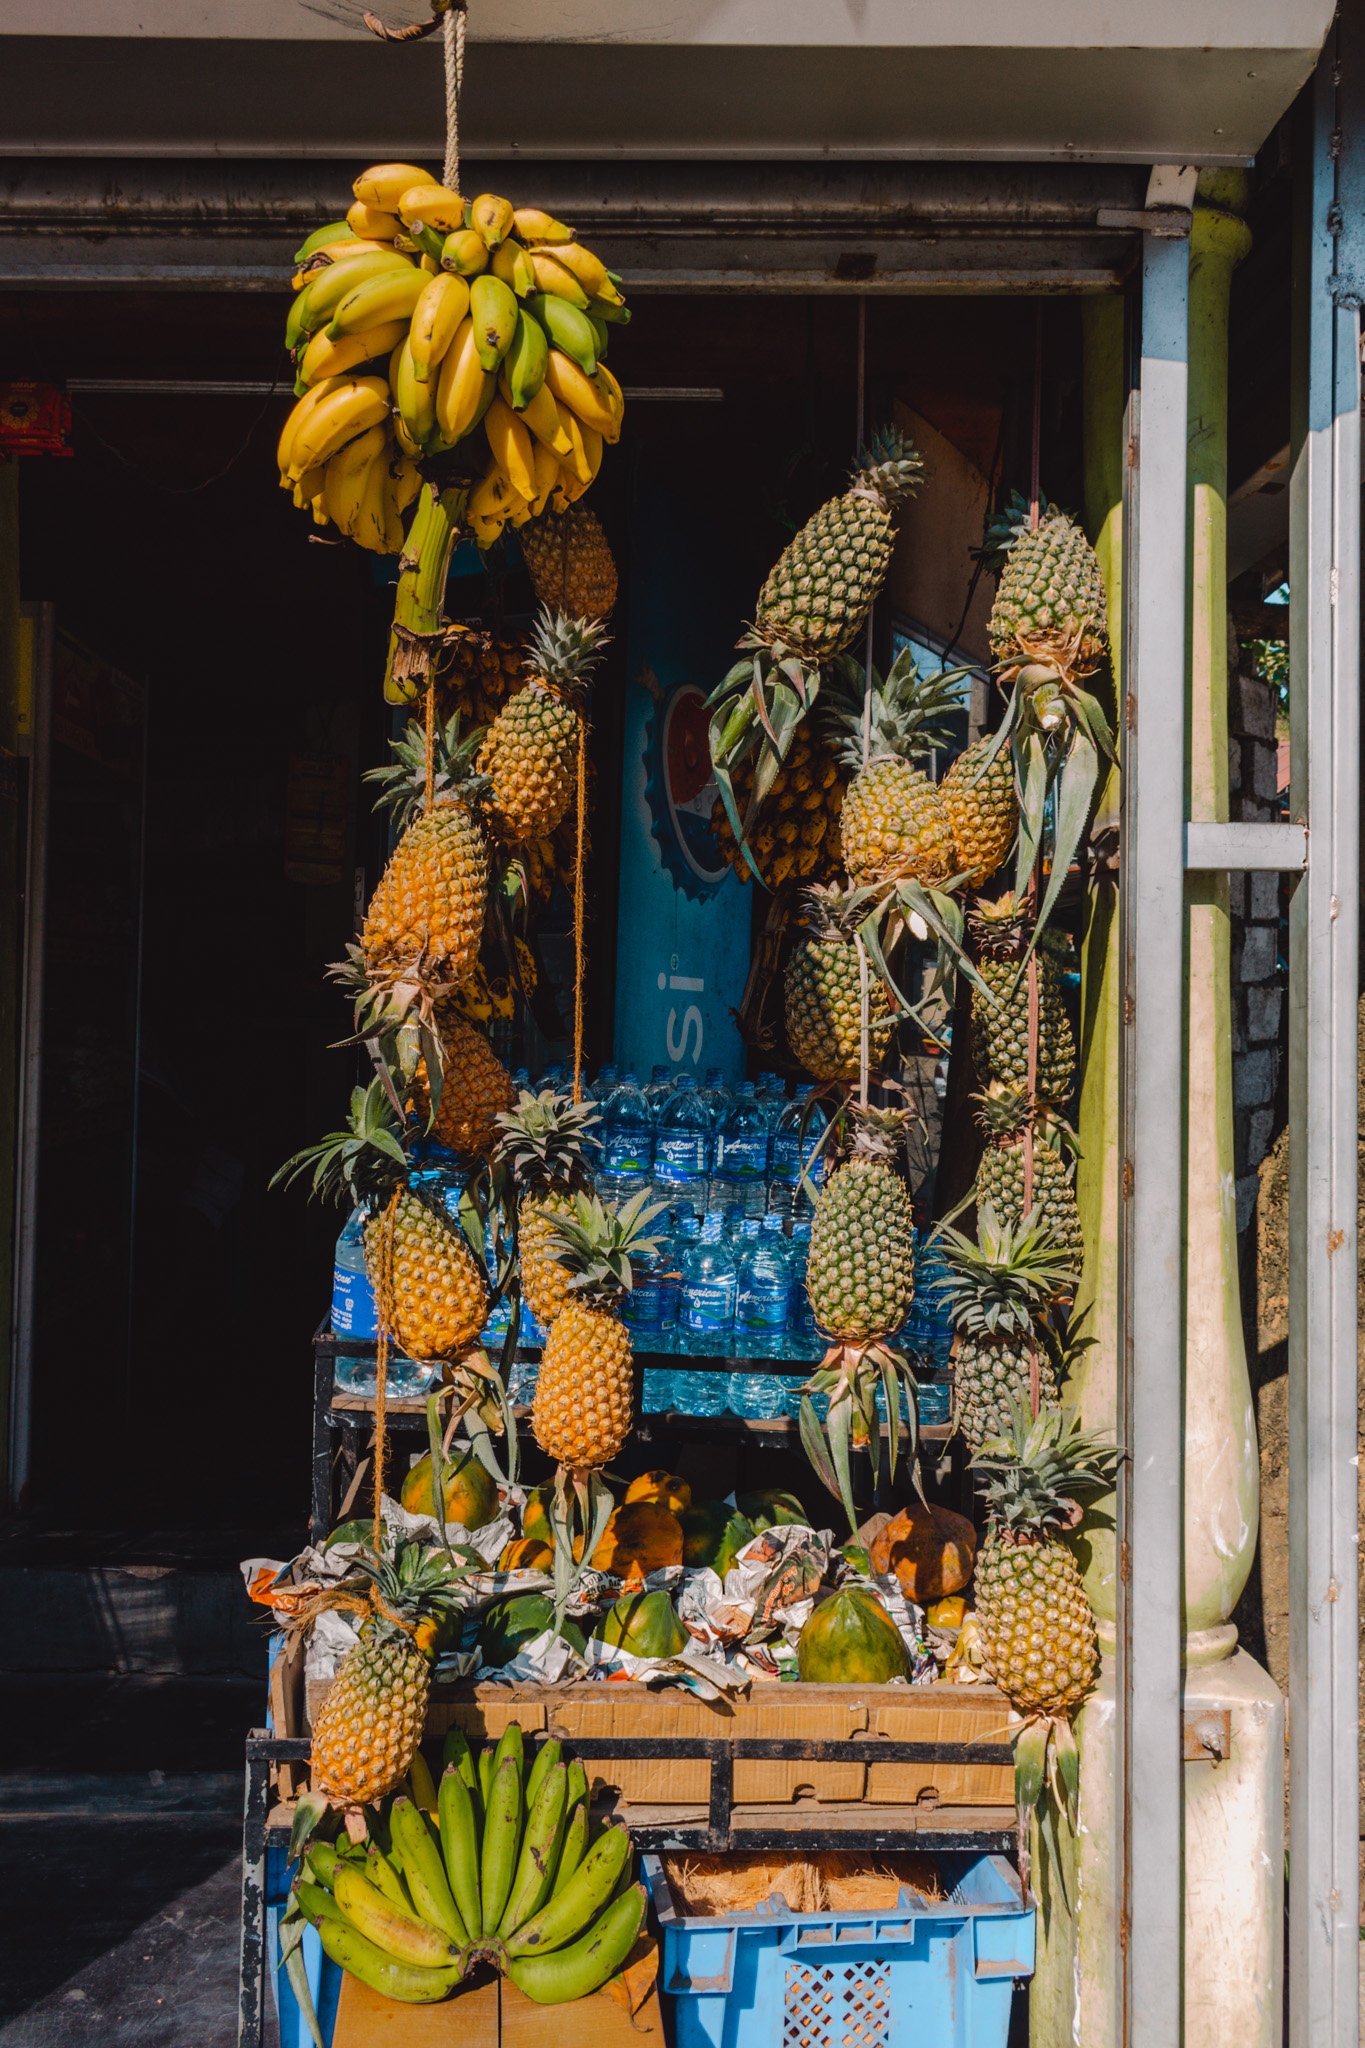 A local fruit shop in Ella, Sri Lanka